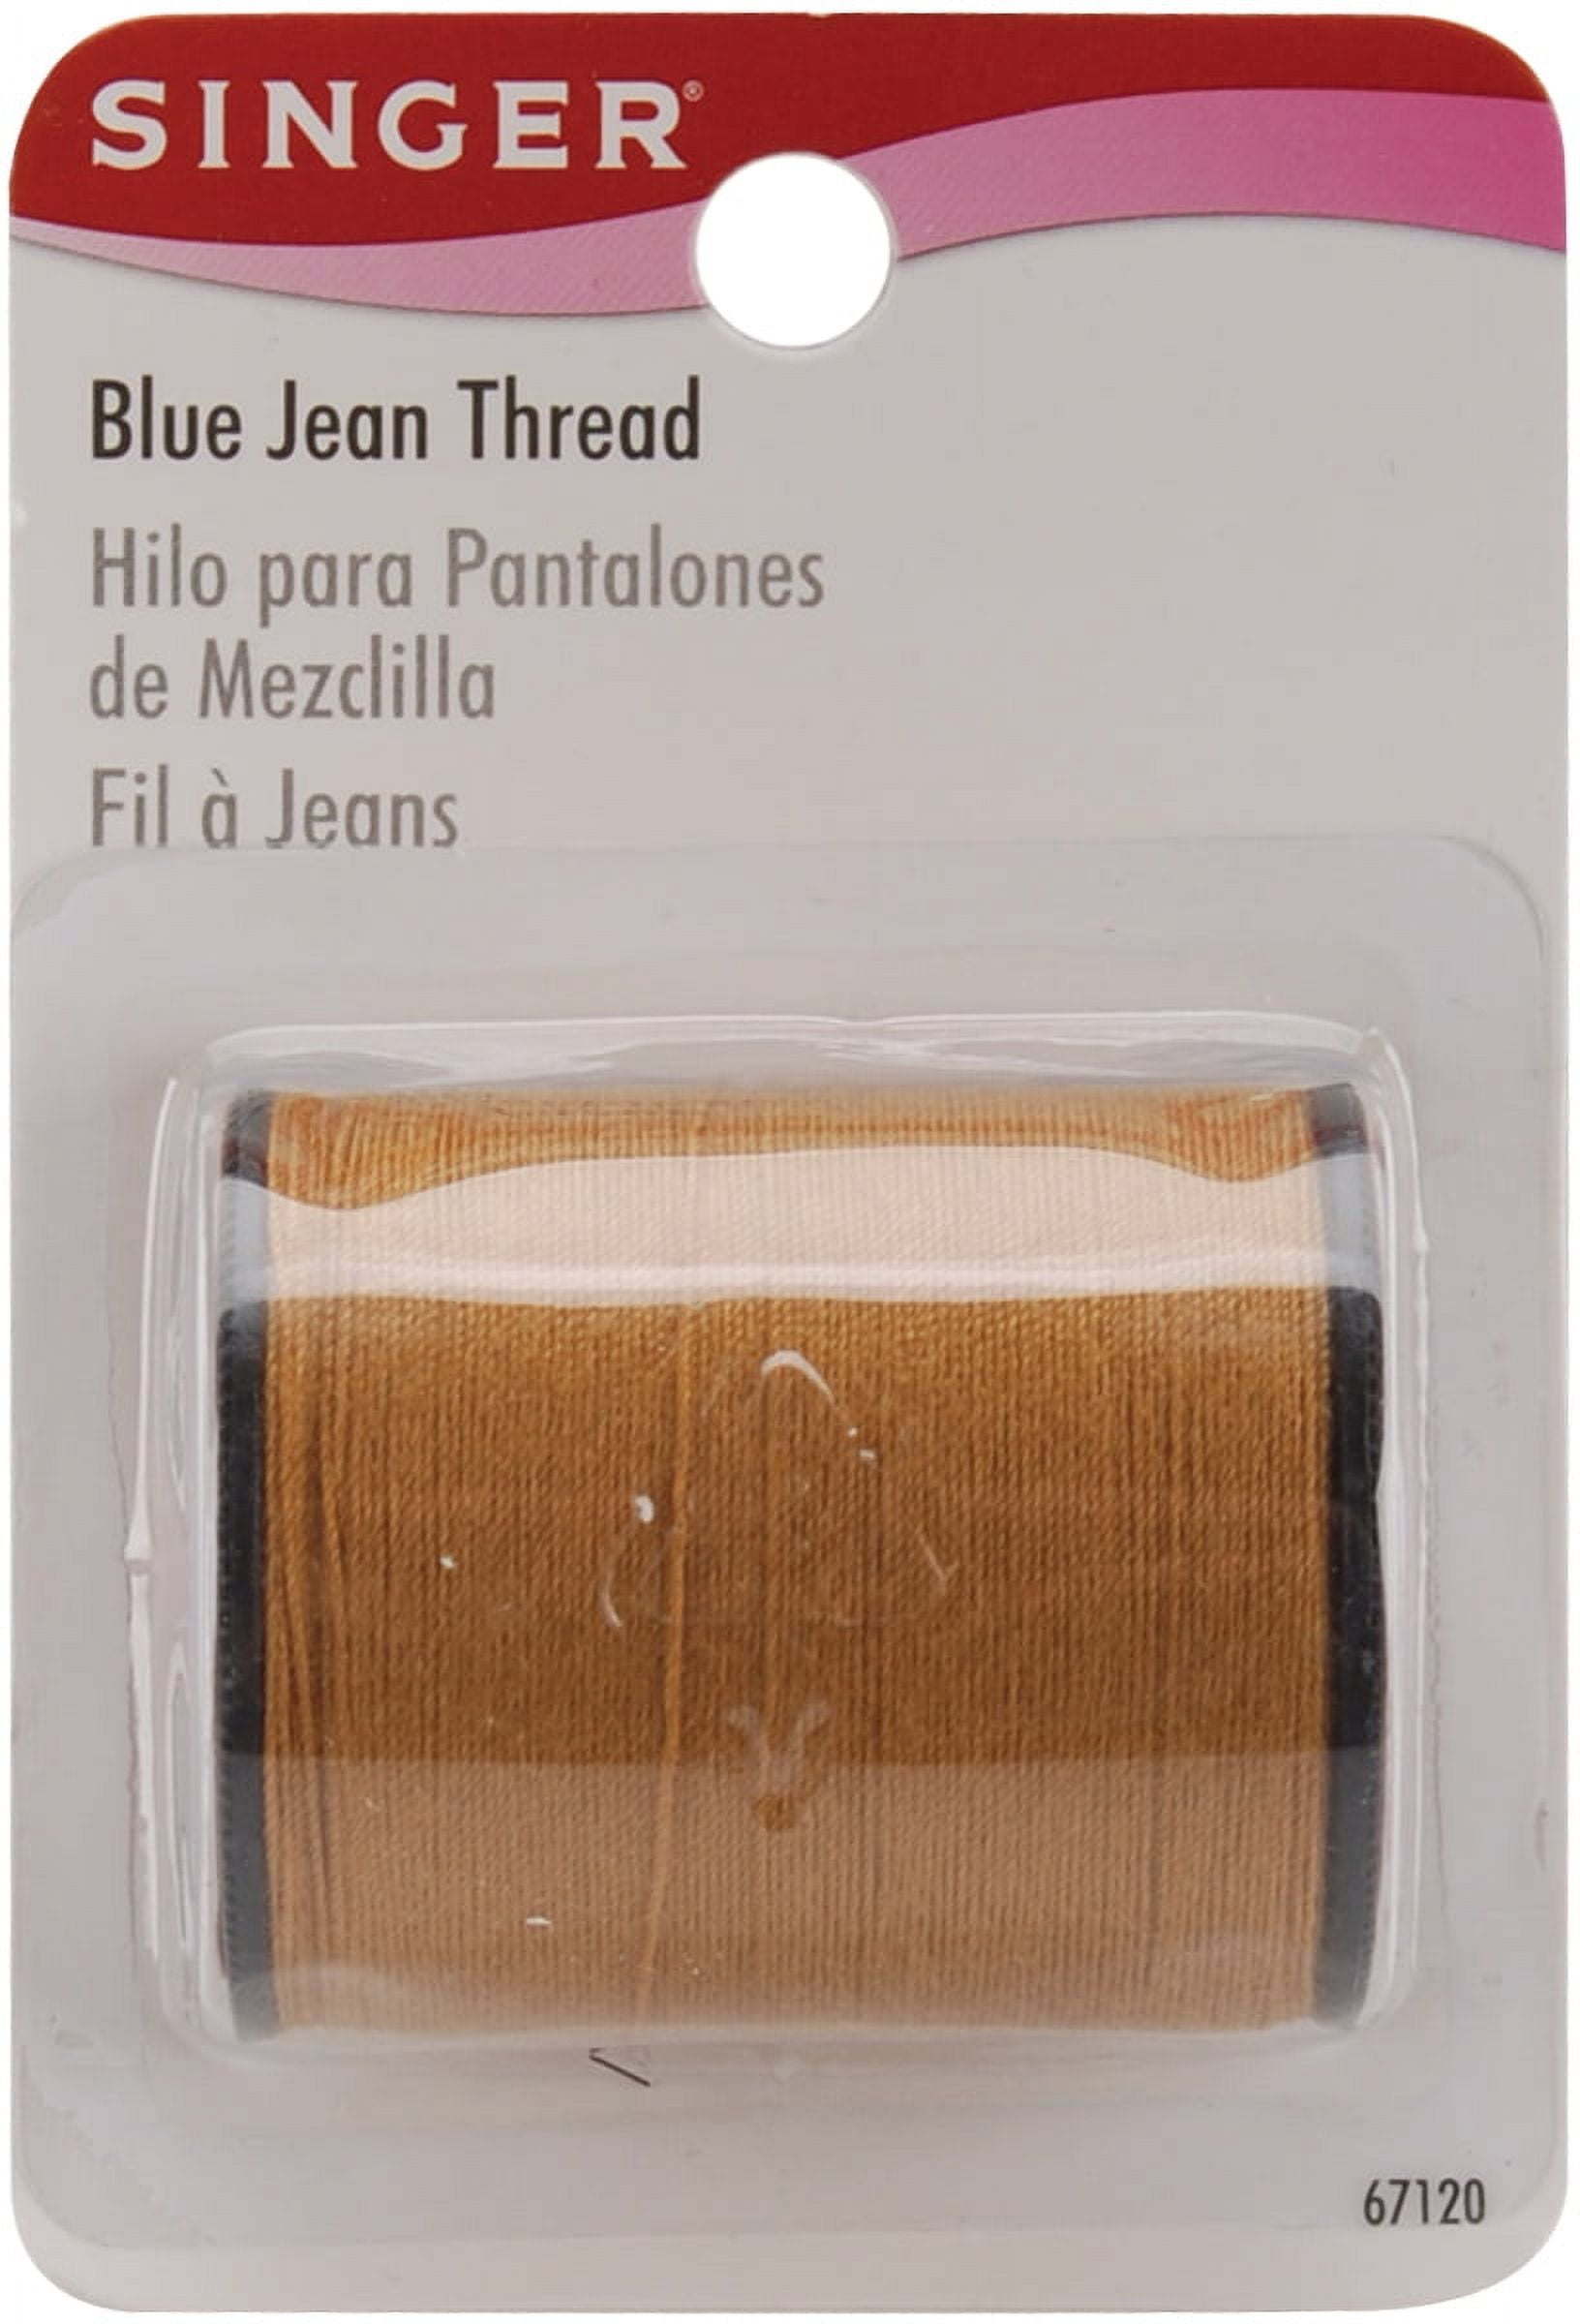 Denim Thread - Jeans Thread Latest Price, Manufacturers & Suppliers